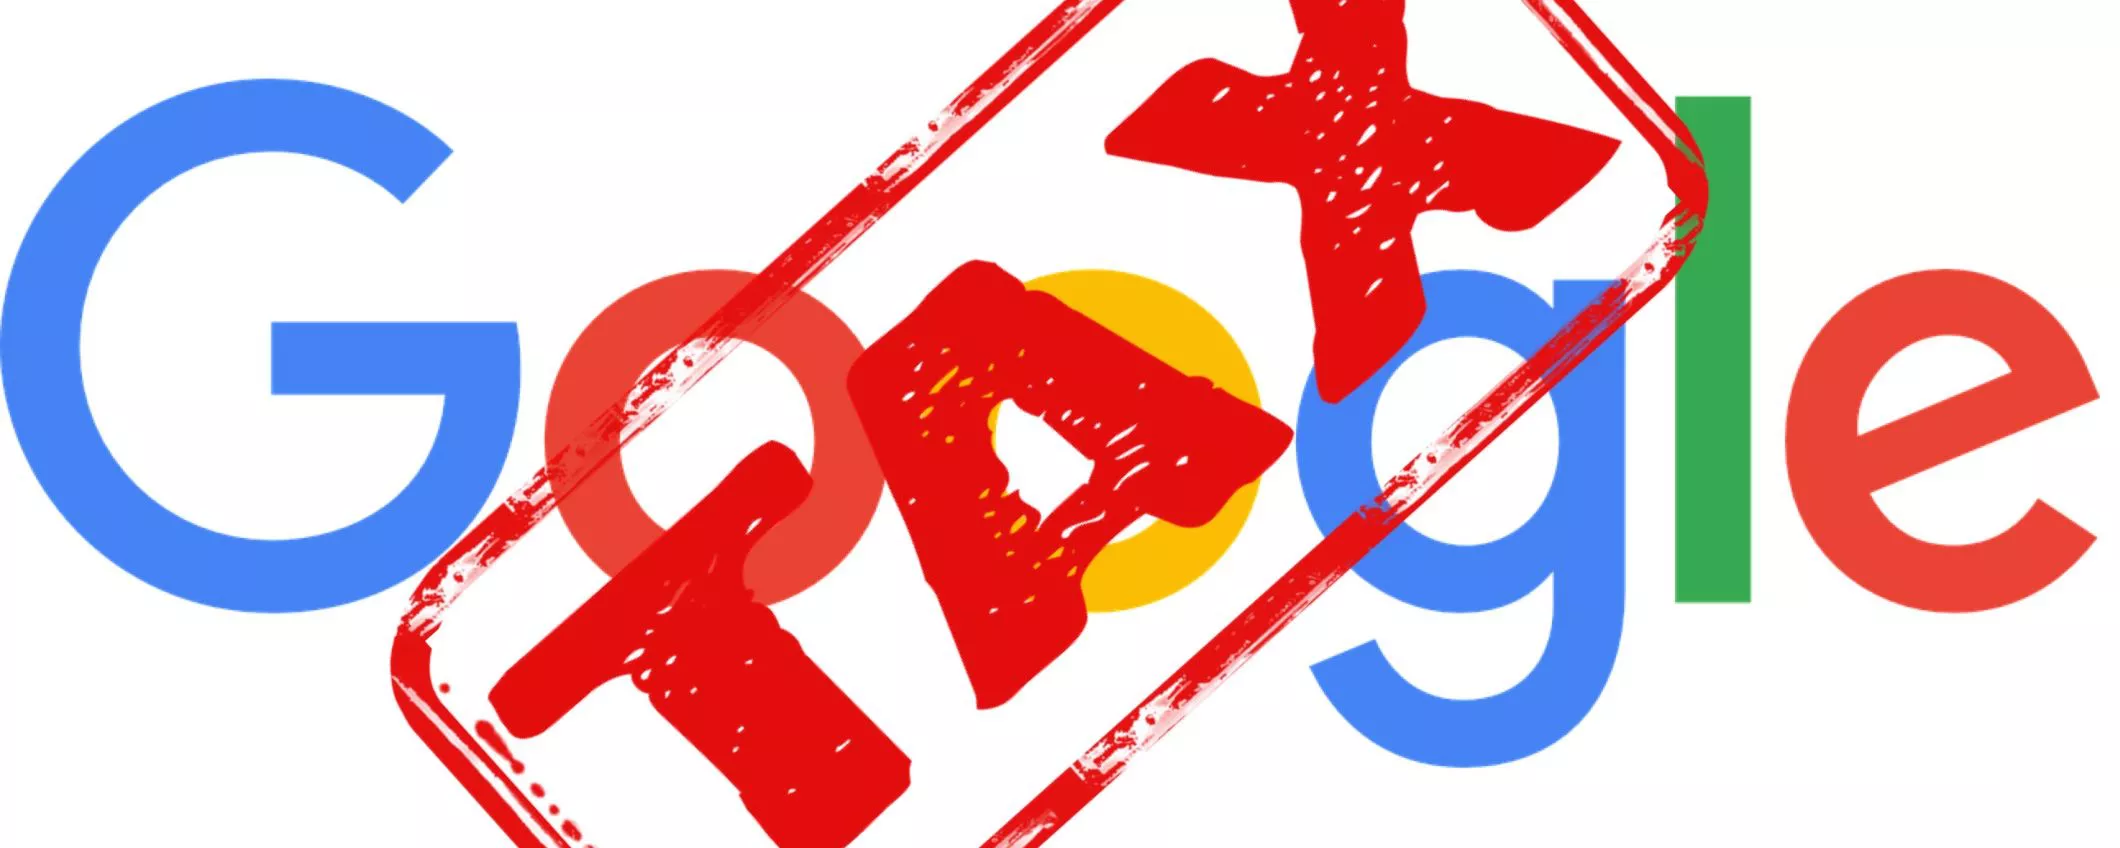 Agenzia delle Entrate contro Google: chiesto 1 miliardo di euro di tasse non pagate